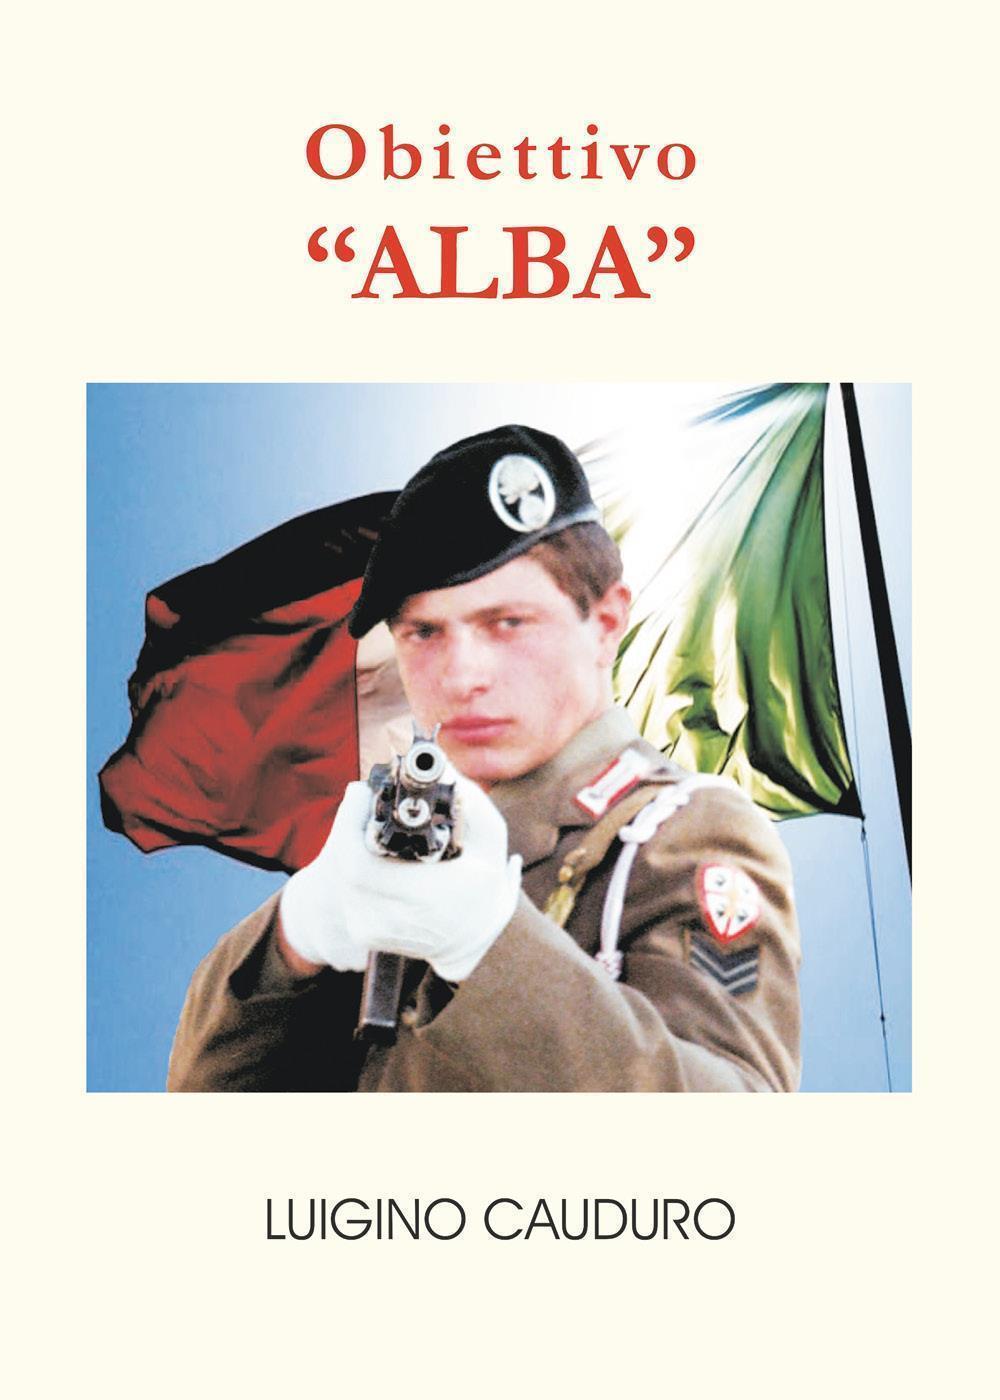 Obiettivo "ALBA"